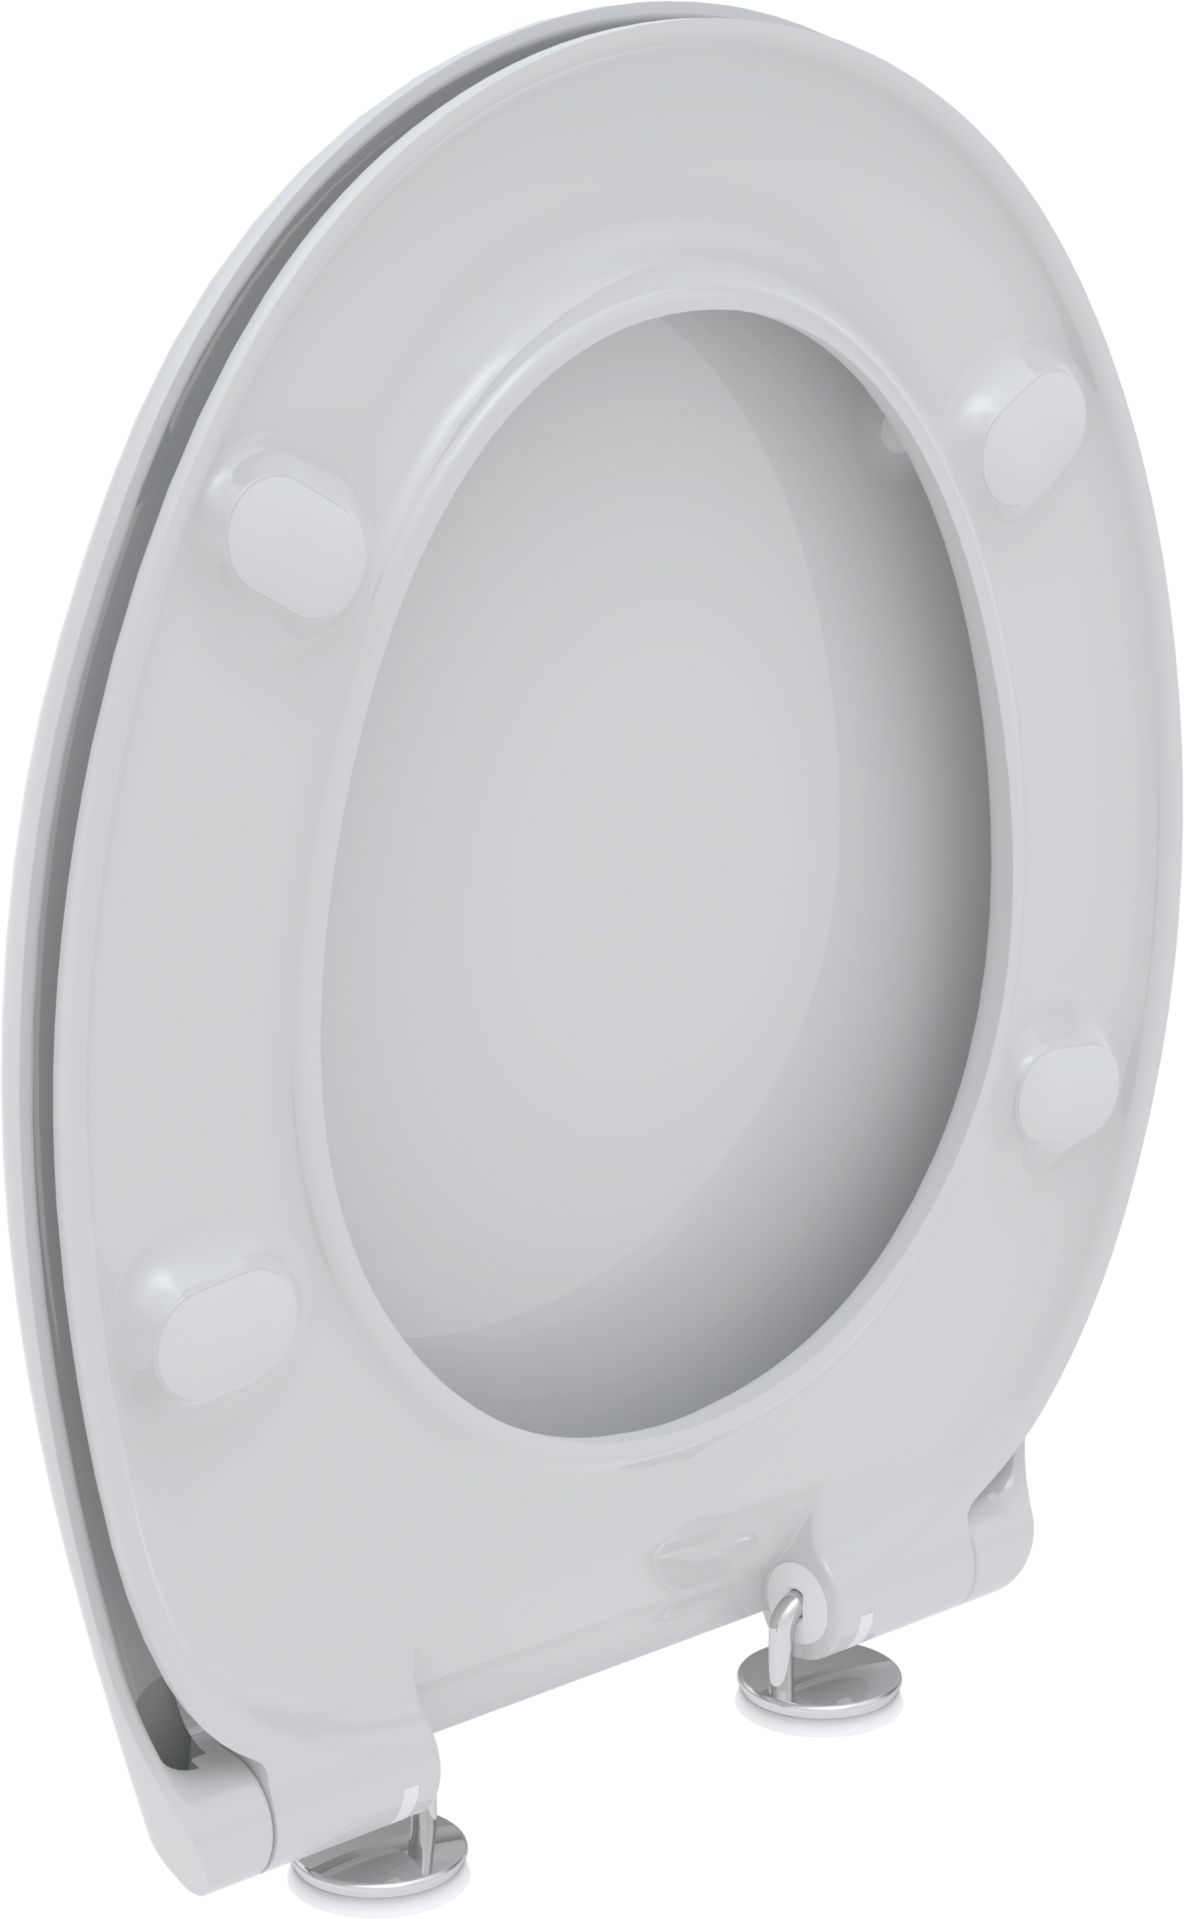 Toilet seat LIBRA, white